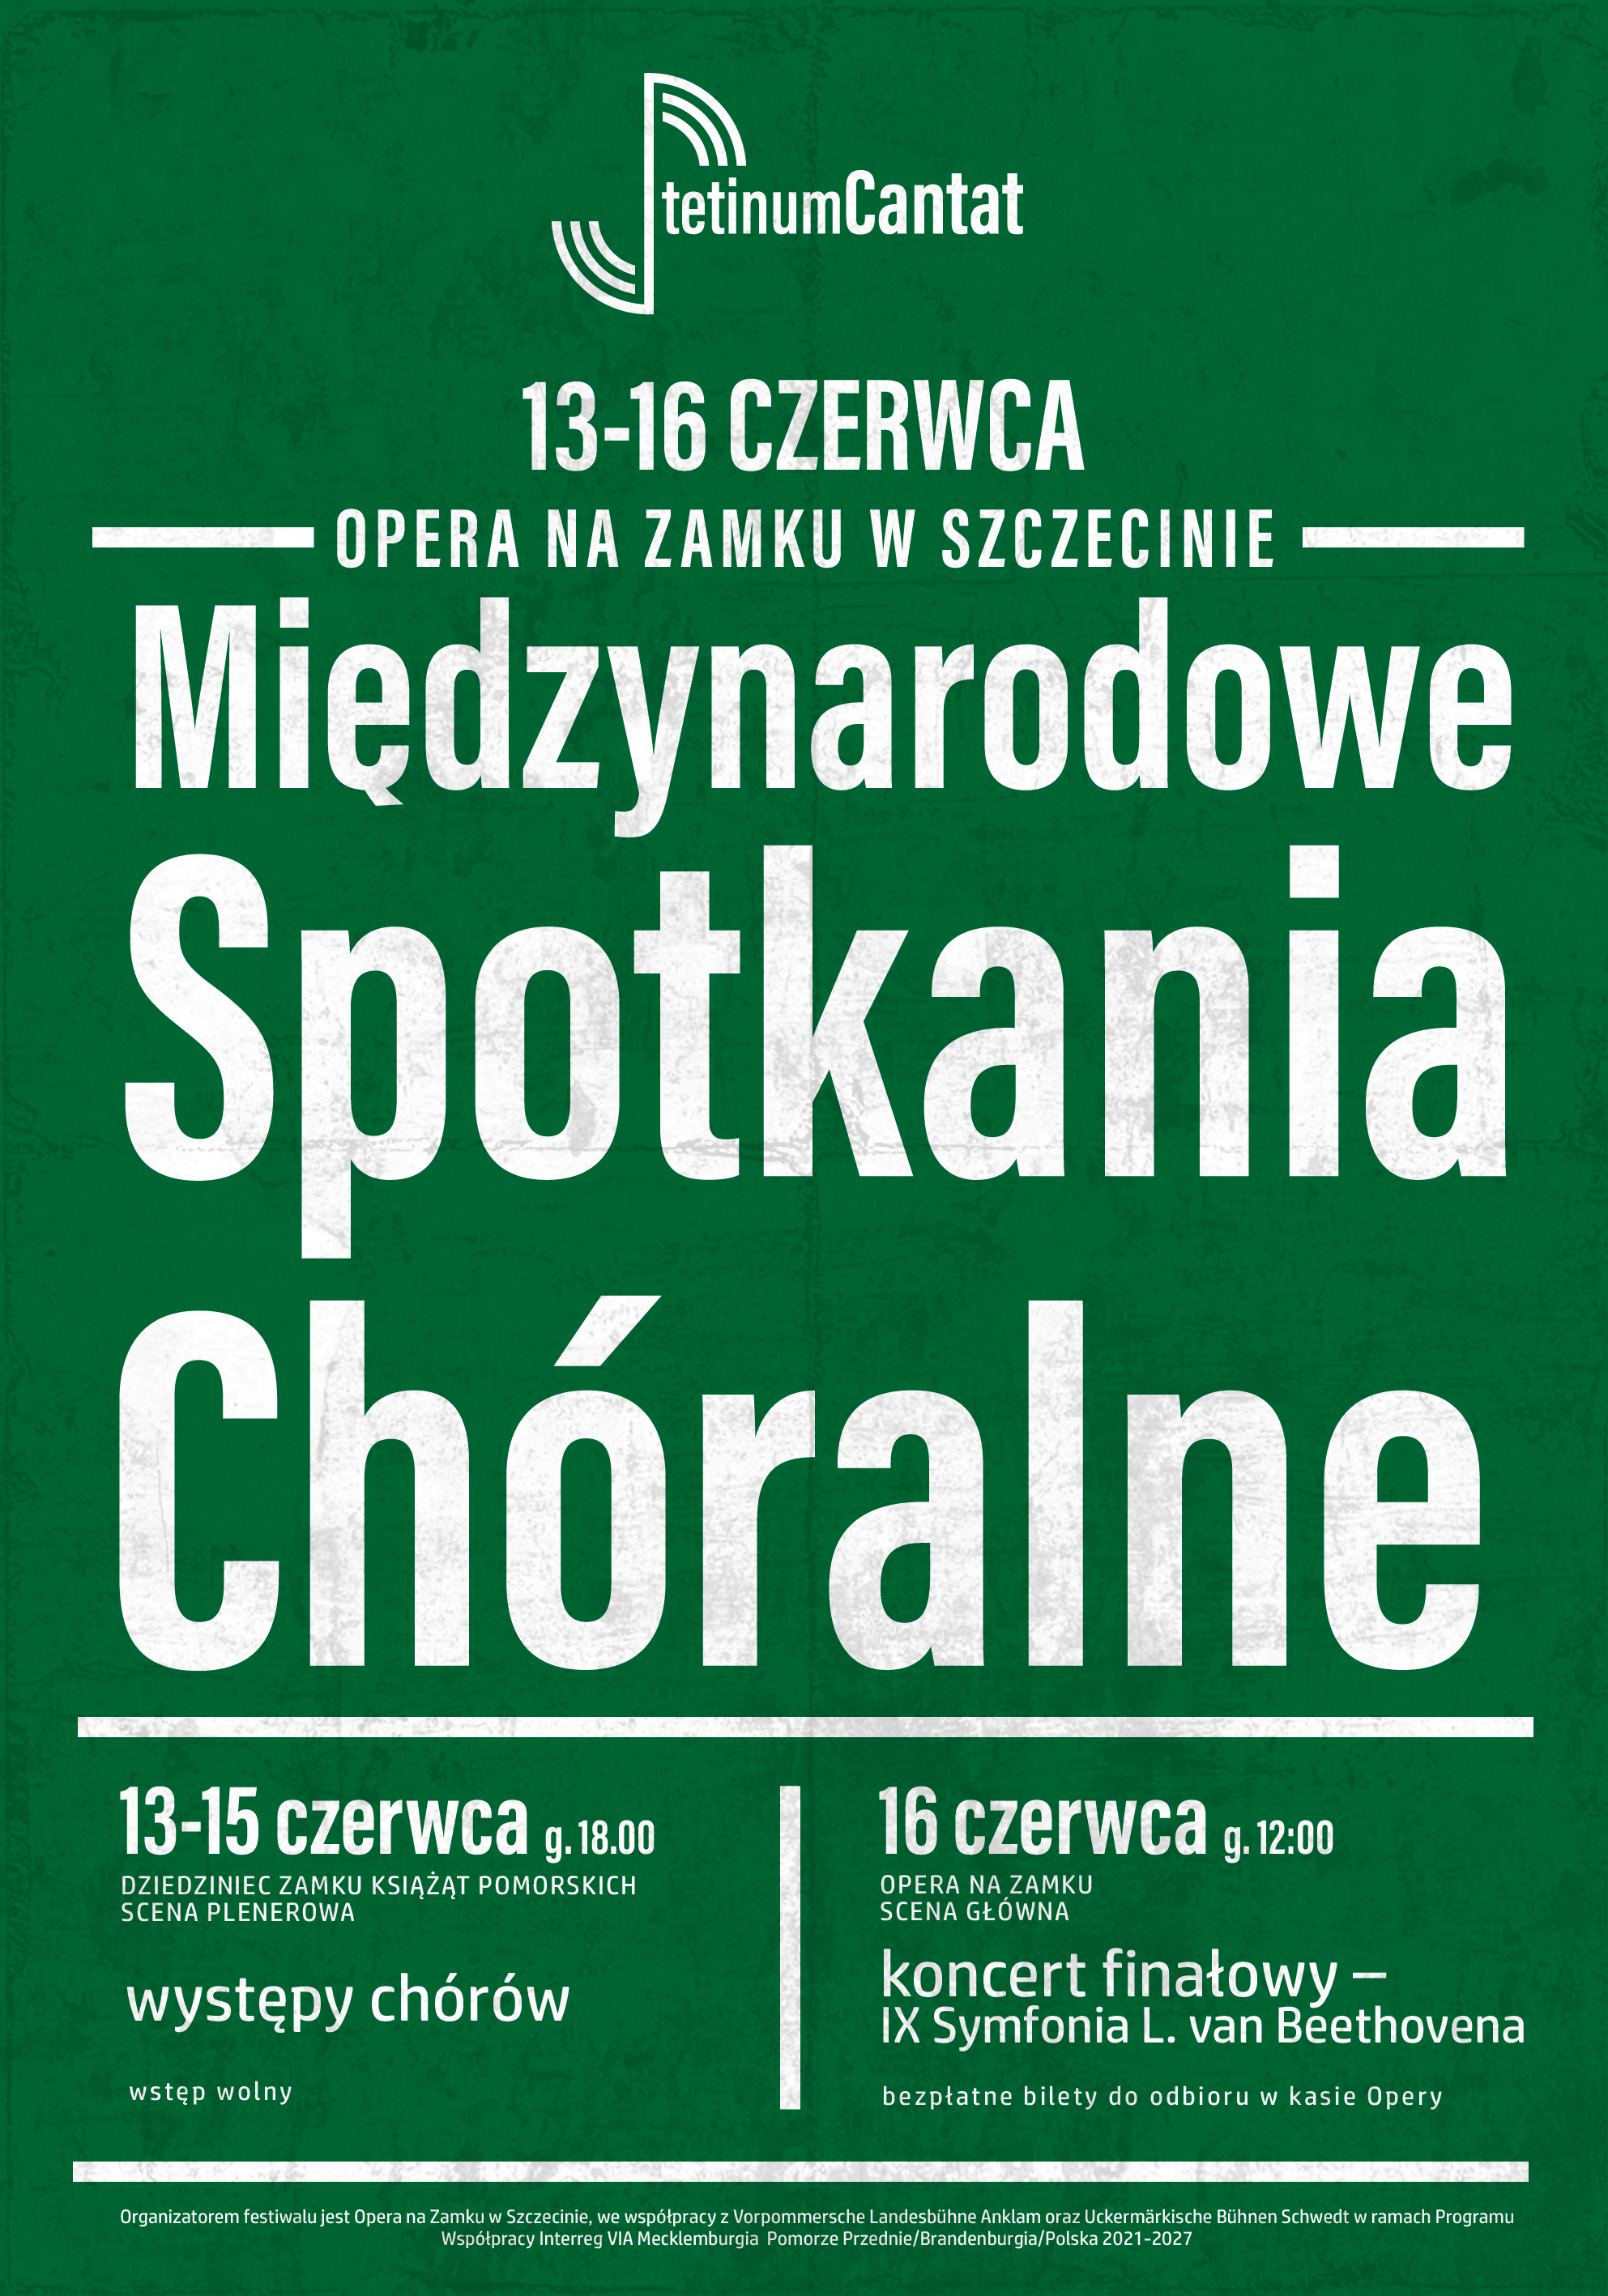 Stetinum Cantat, Międzynarodowe Spotkania Chóralne, Opera na Zamku w Szczecinie